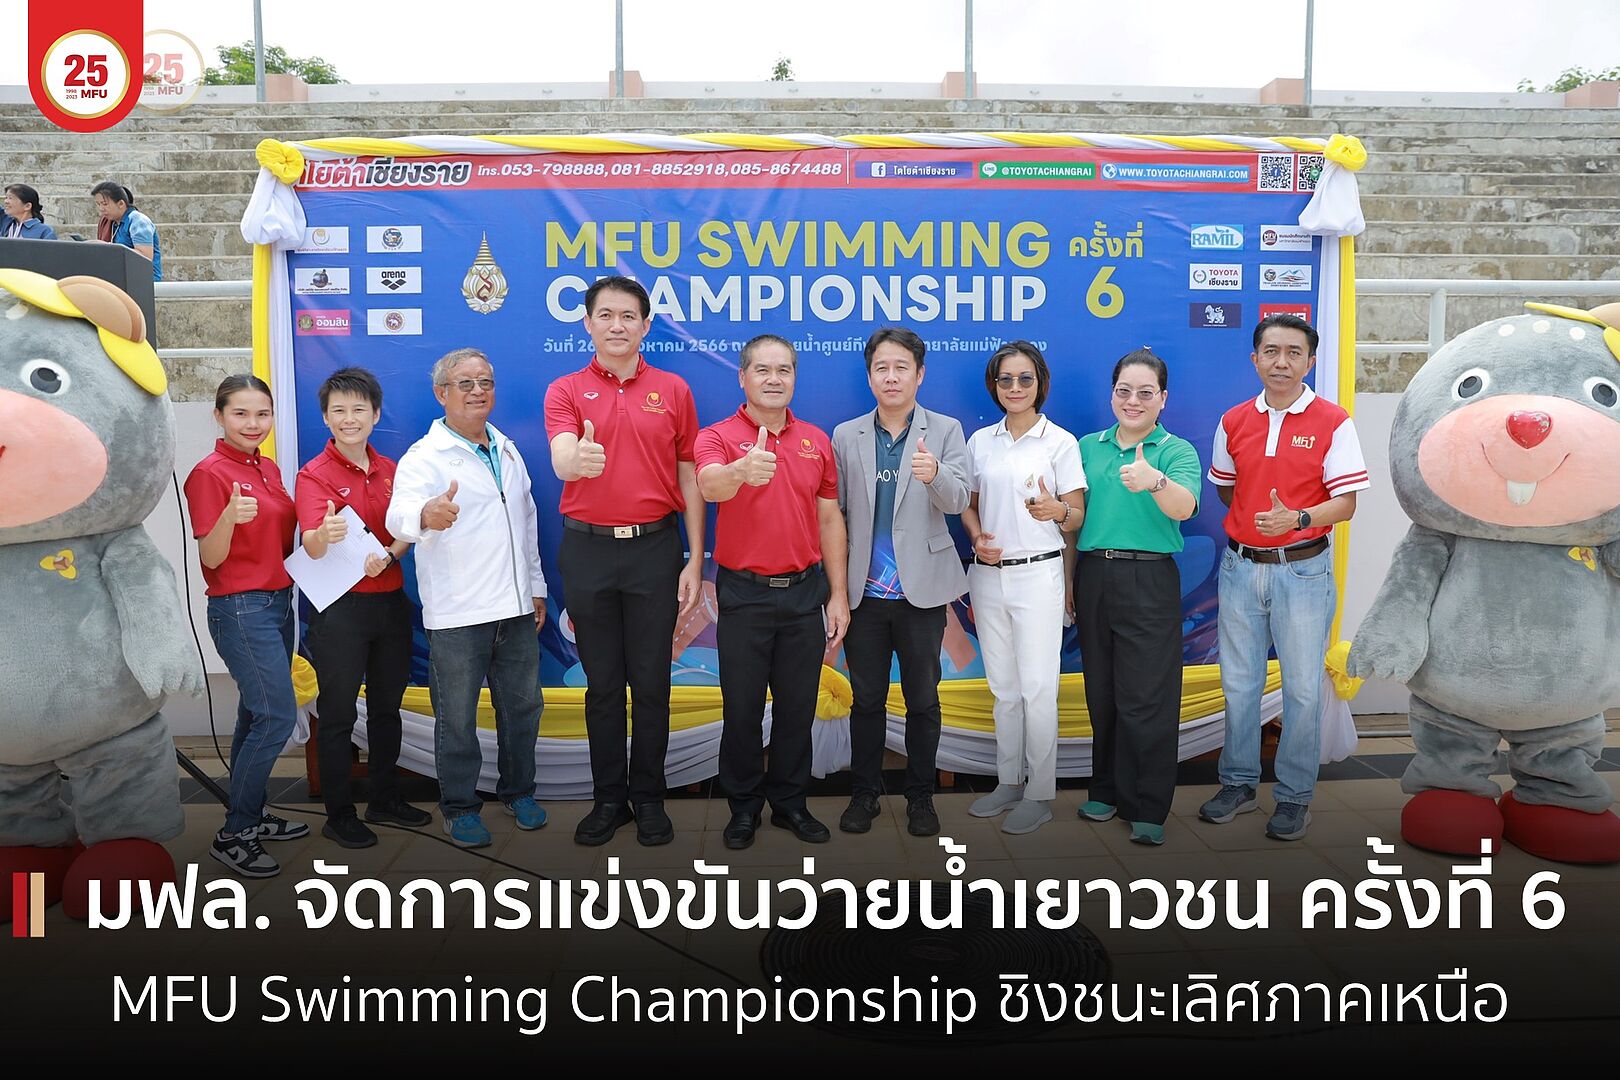 มฟล. สนามการแข่งขันว่ายน้ำ MFU Swimming Championship ชิงชนะเลิศภาคเหนือ ครั้งที่ 6 รับรองสถิติโดยสมาคมกีฬาว่ายน้ำแห่งประเทศไทย